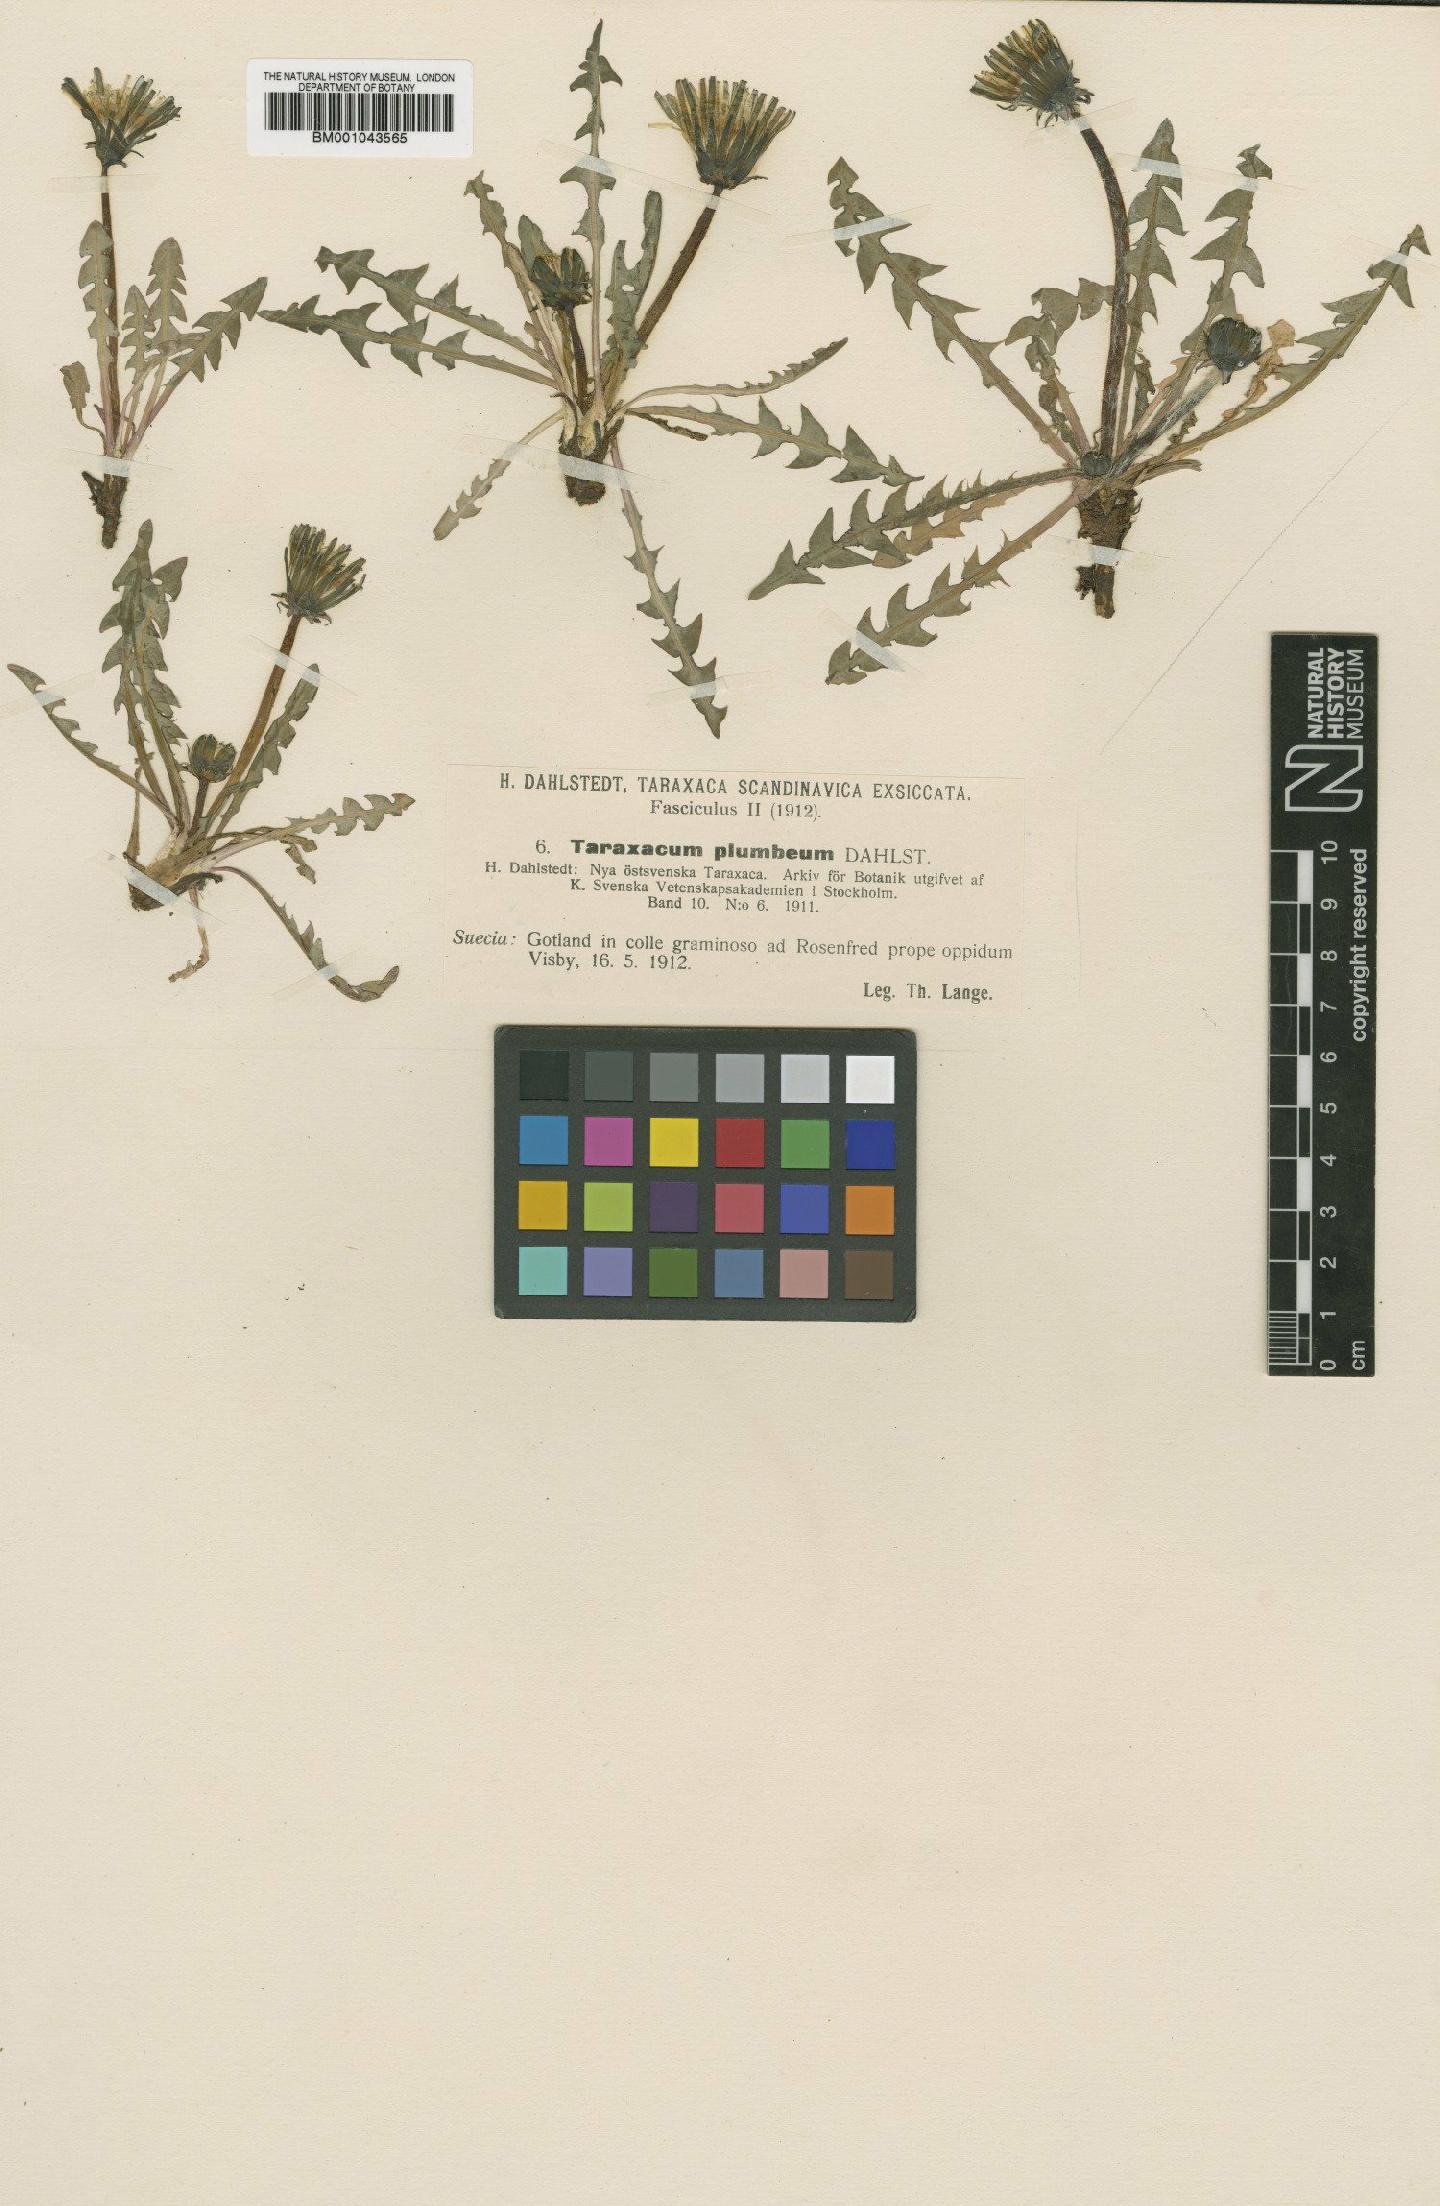 To NHMUK collection (Taraxacum plumbeum Dahlst.; Type; NHMUK:ecatalogue:2201137)